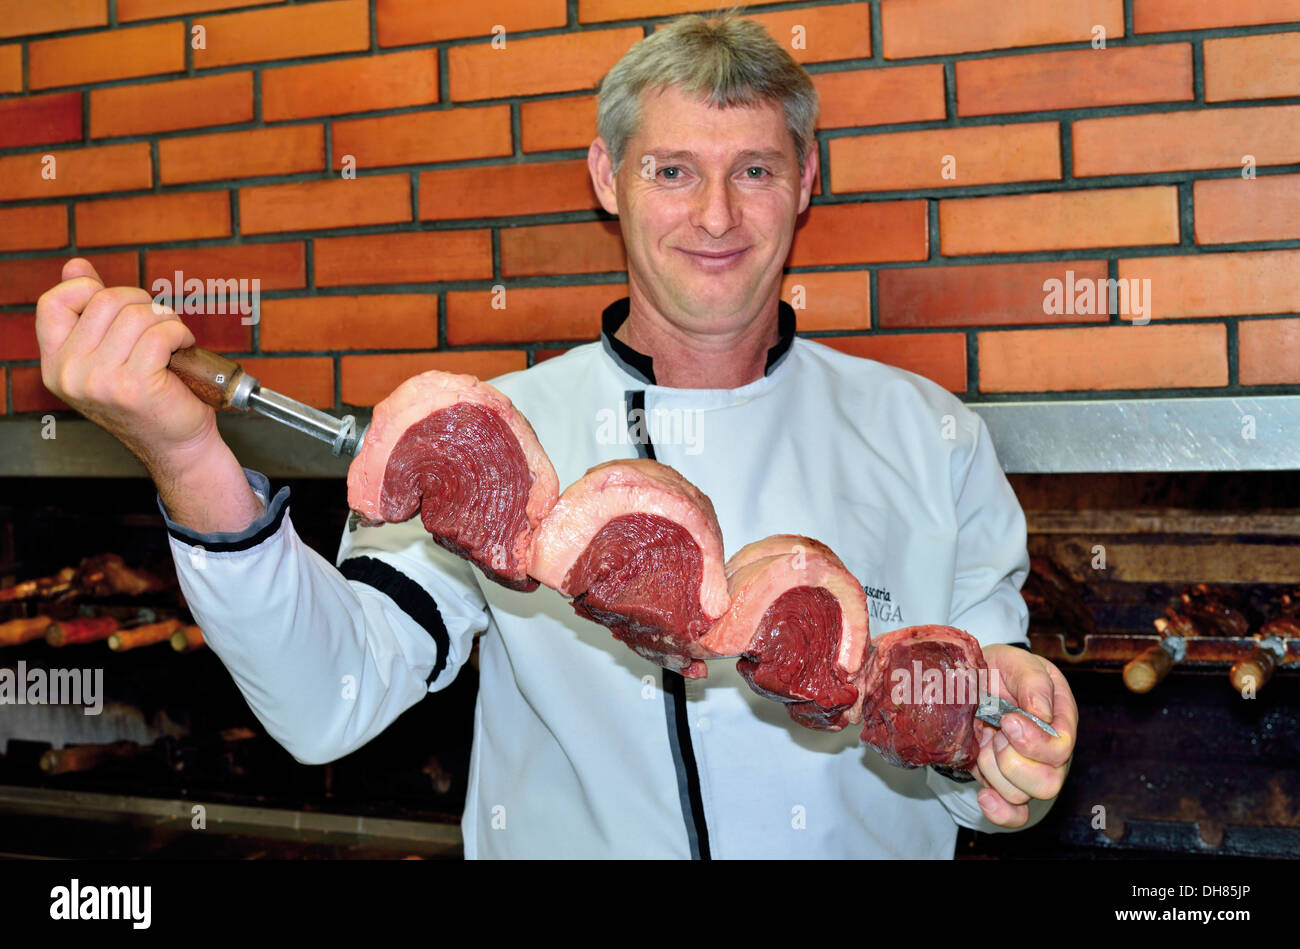 Brasilien, Bento Goncalves: Grill, den Koch mit riesigen Fleisch bereit für spucken in den Grill Restaurant Churrascaria Ipiranga setzen Stockfoto